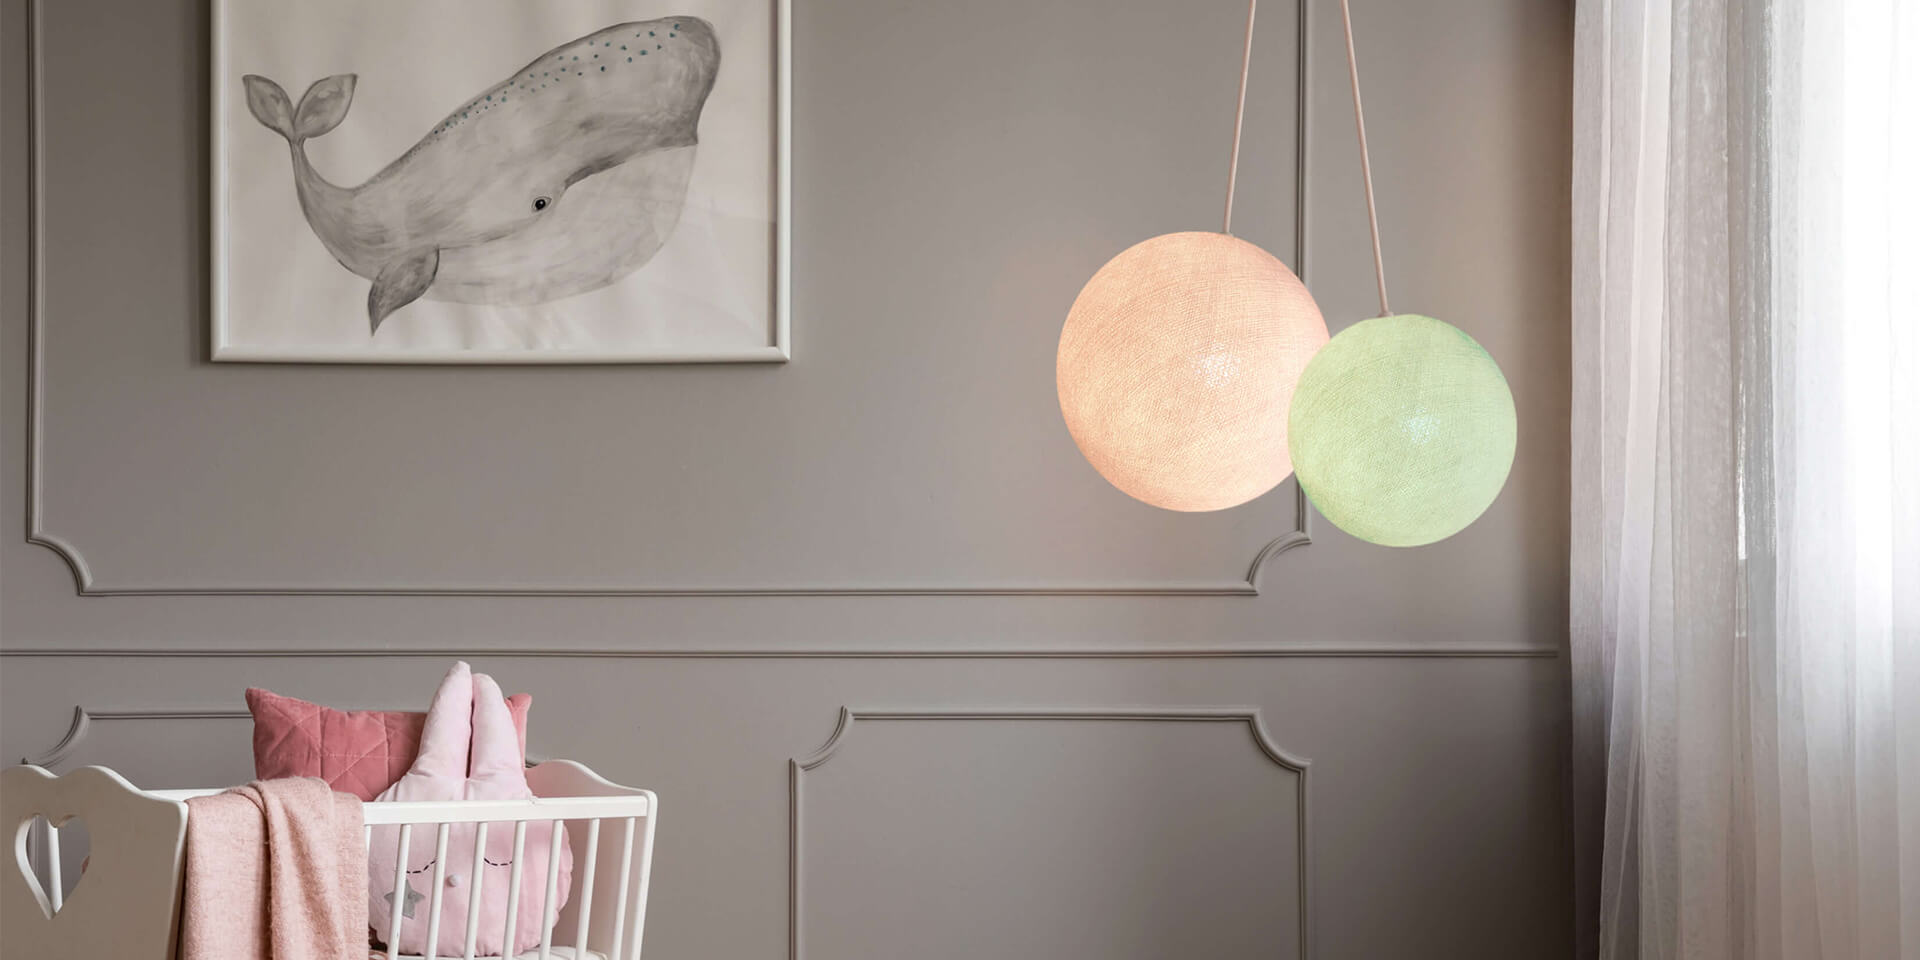 LED Deckenlampe mit 2 Kugeln aus Baumwolle. Pendelleuche in Weiß und Mint. Höhenverstellbare Hängelampe, ideal für Kinderzimmer und Babyzimmer. Dimmbare Deckenleuchte.